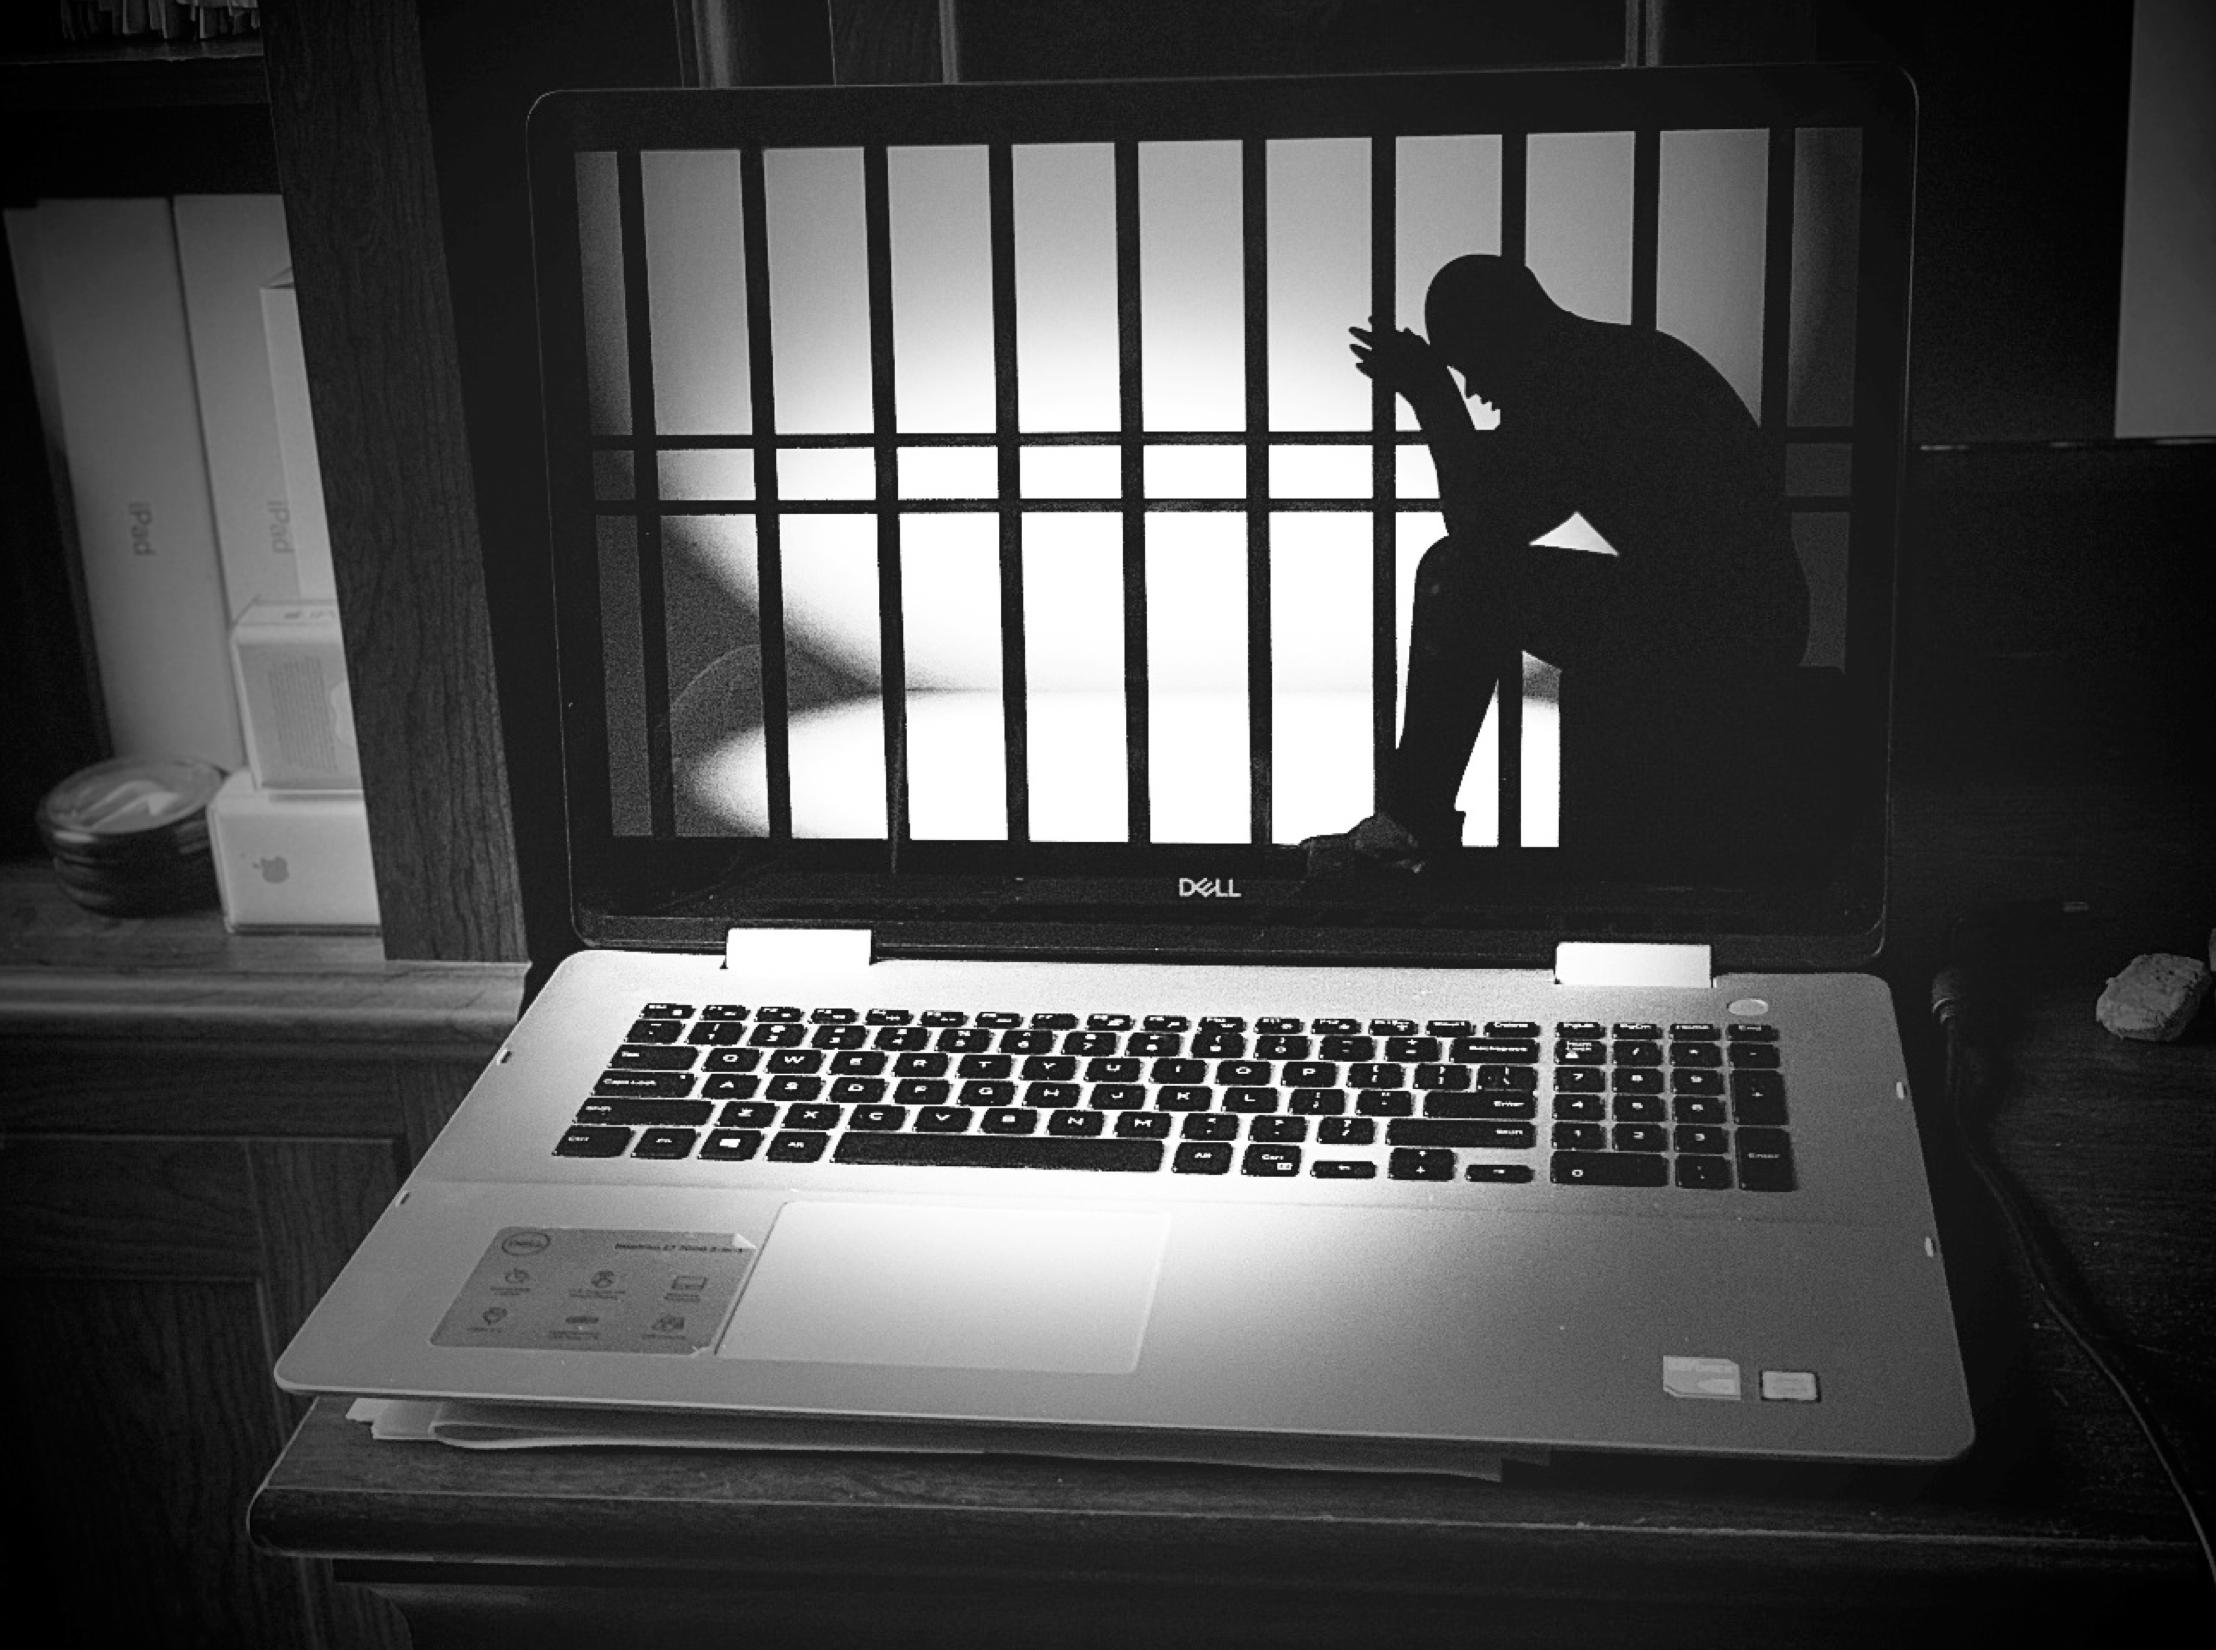 laptop image: man behind bars